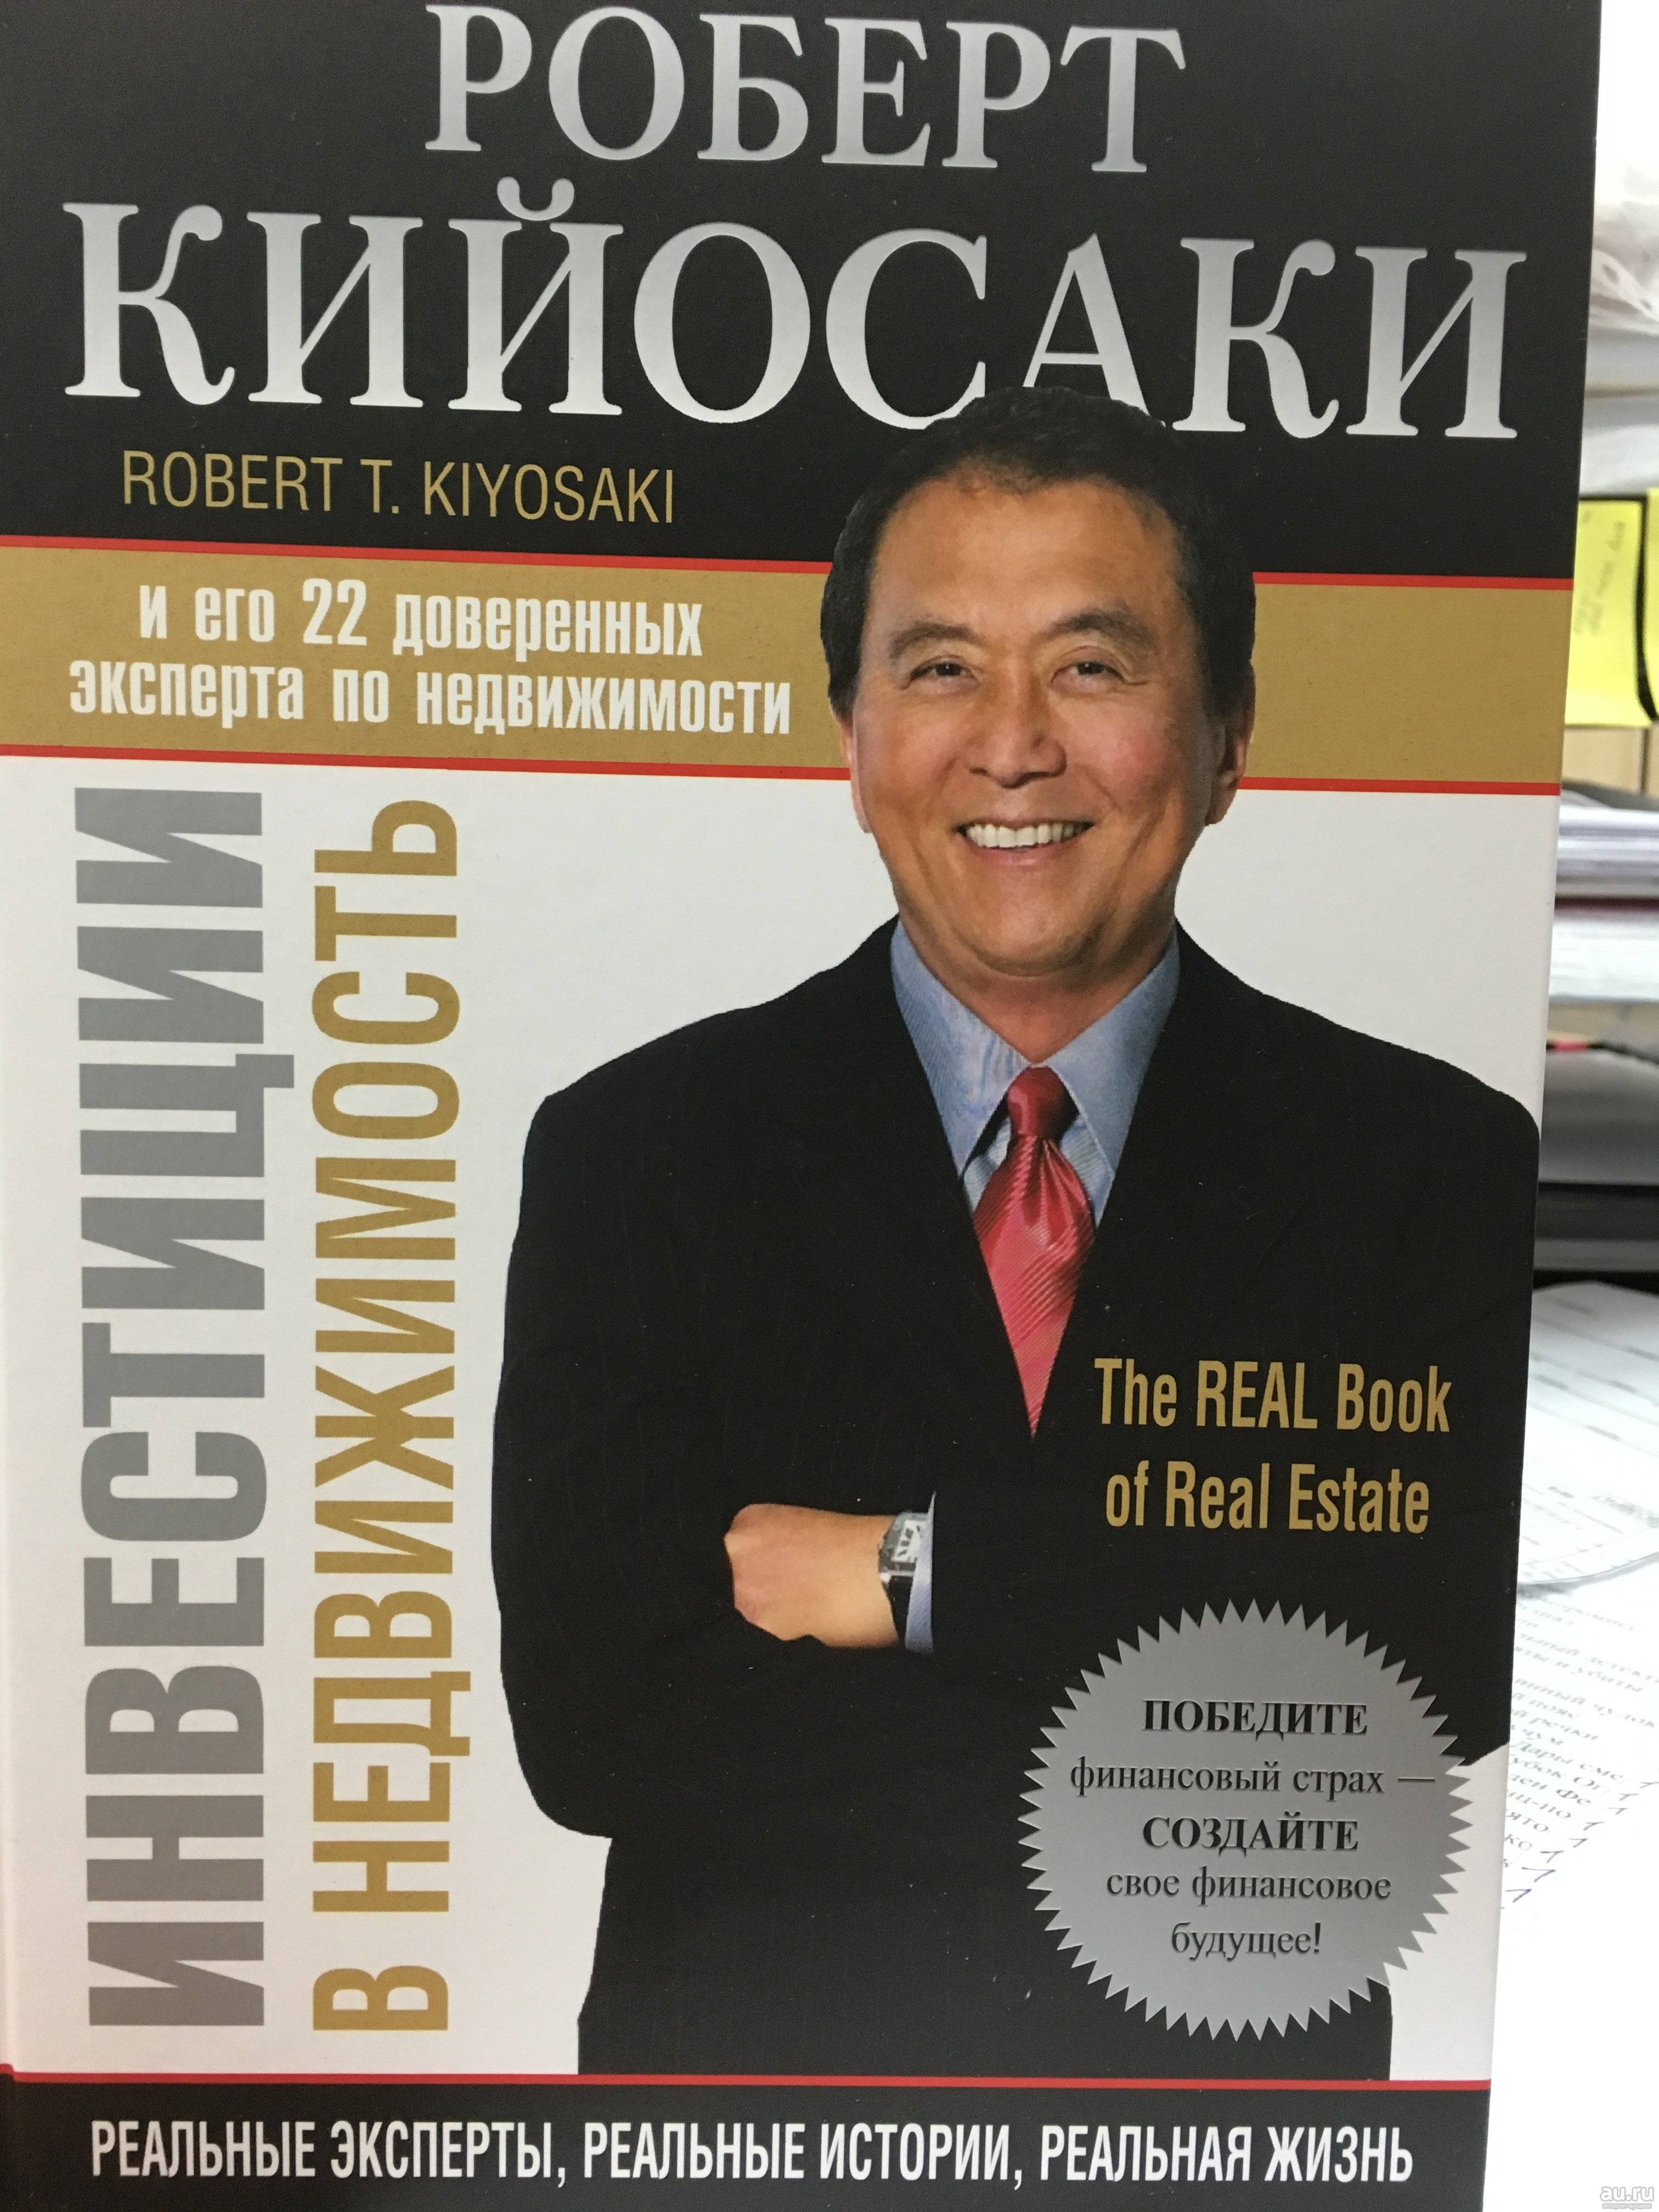 Роберт кийосаки – биография, фото, личная жизнь, новости, бизнес, книги 2020 - 24сми